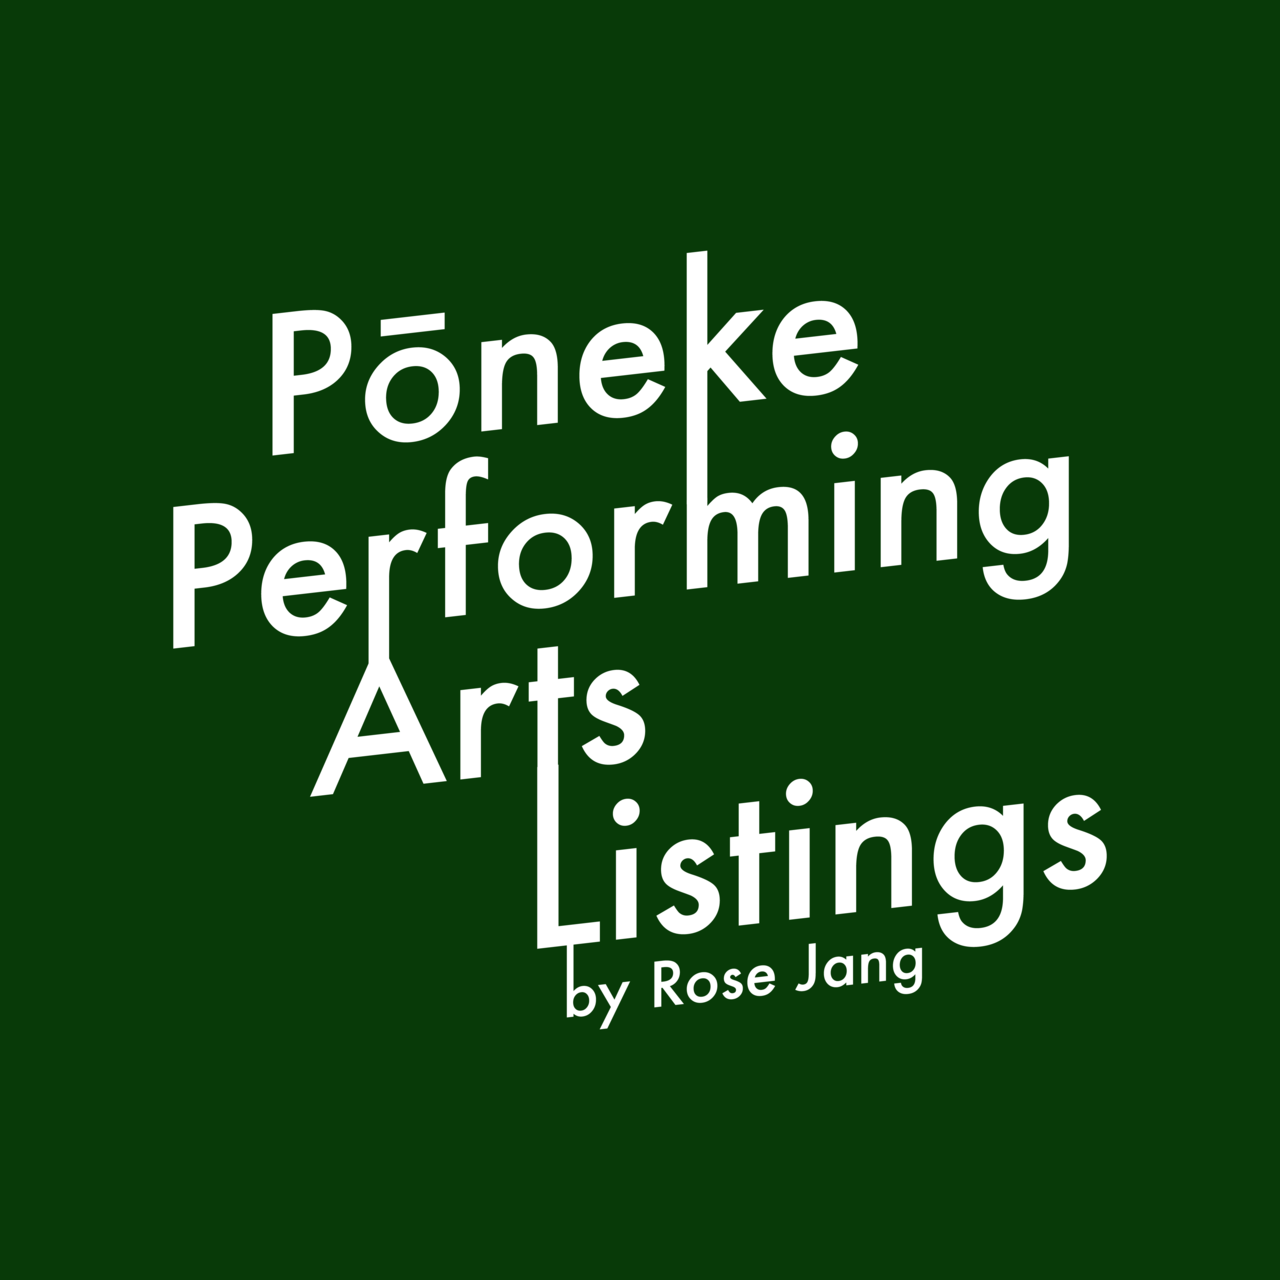 Pōneke performing arts listings by Rose